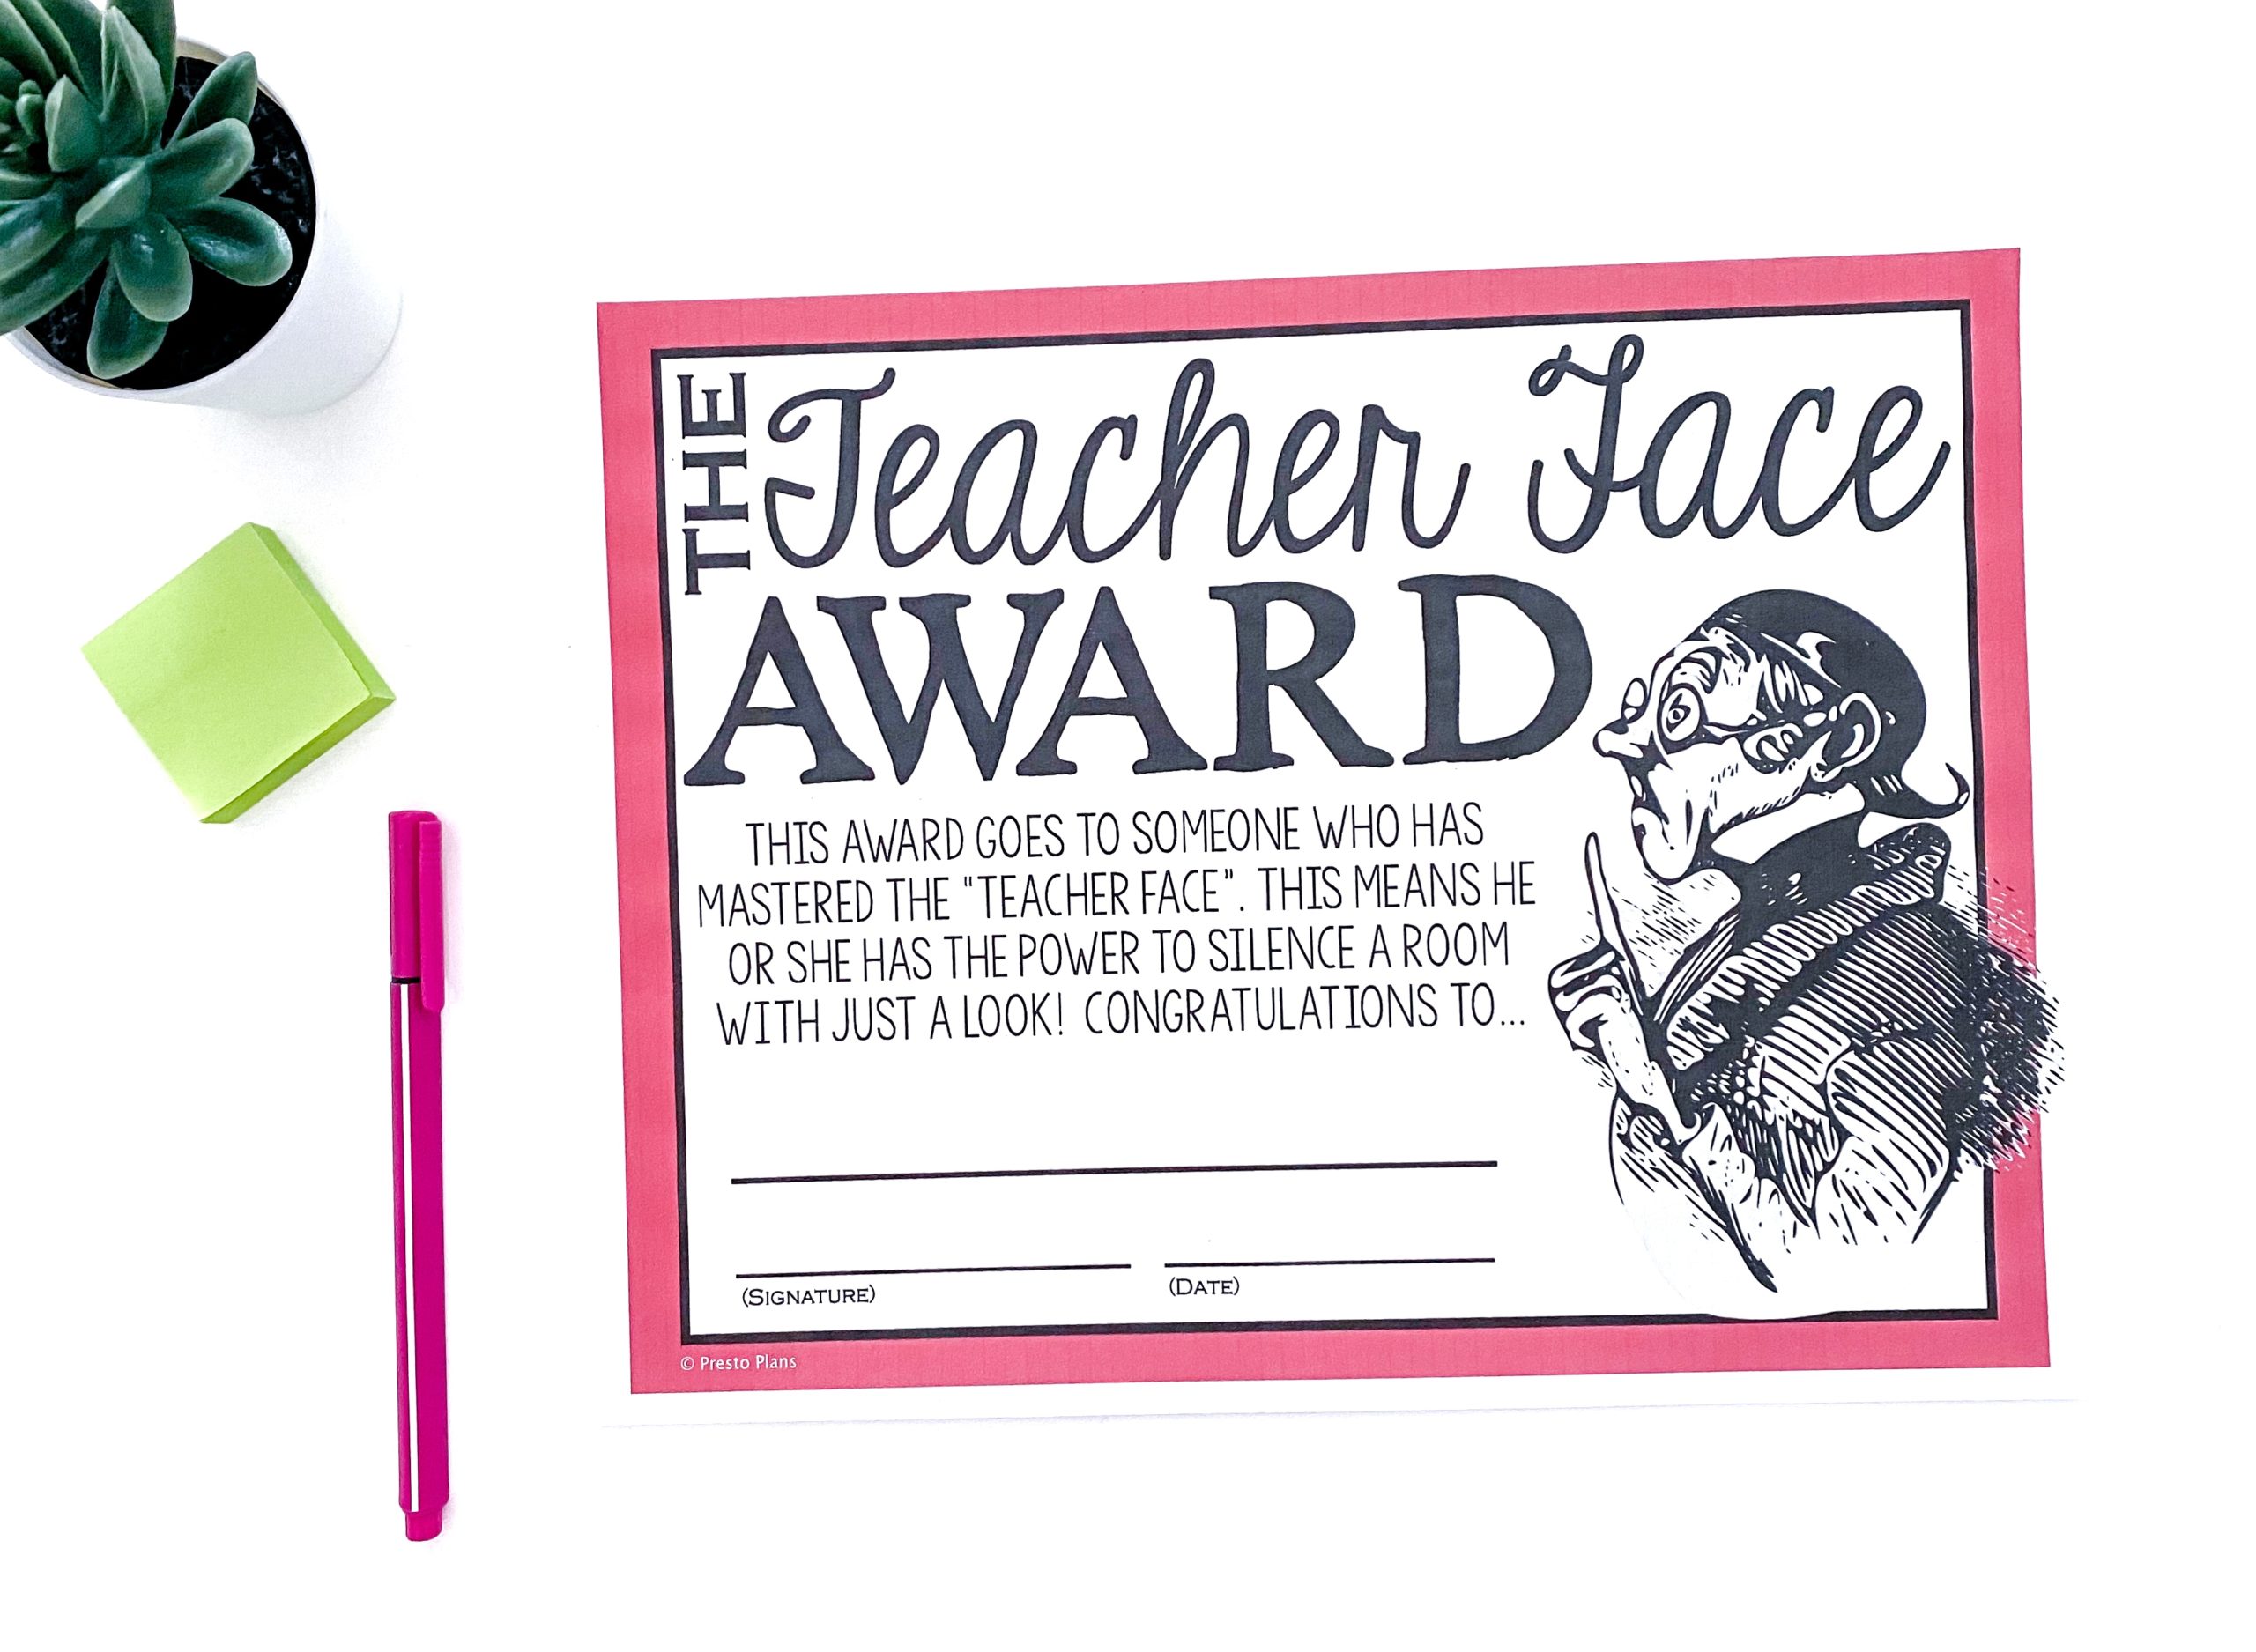 The Teacher Face Teacher Award